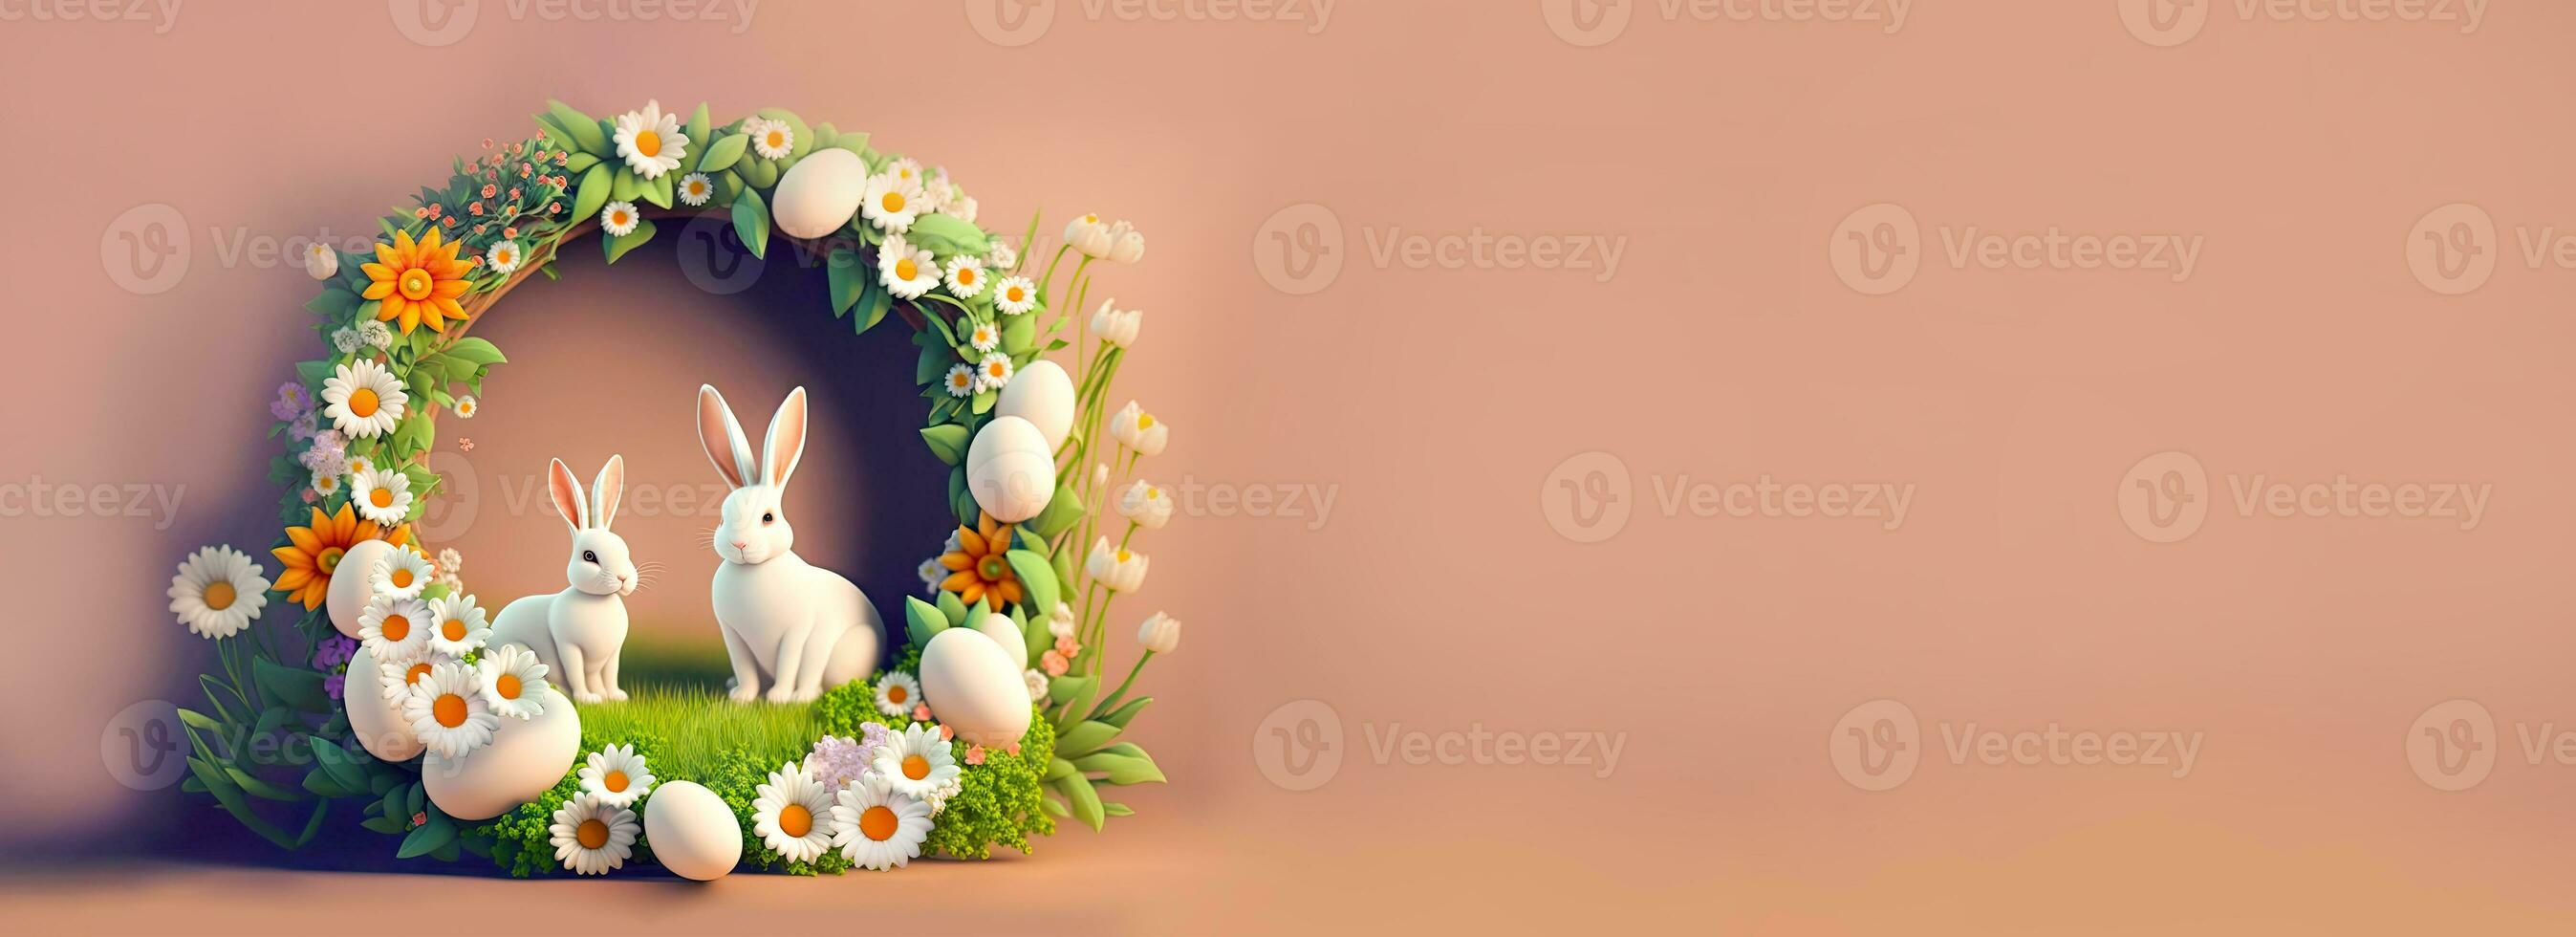 3d machen von Paar Hase Charakter mit Gänseblümchen Blume, Ei dekorativ kreisförmig Bogen gegen Pastell- braun Hintergrund und Kopieren Raum. foto